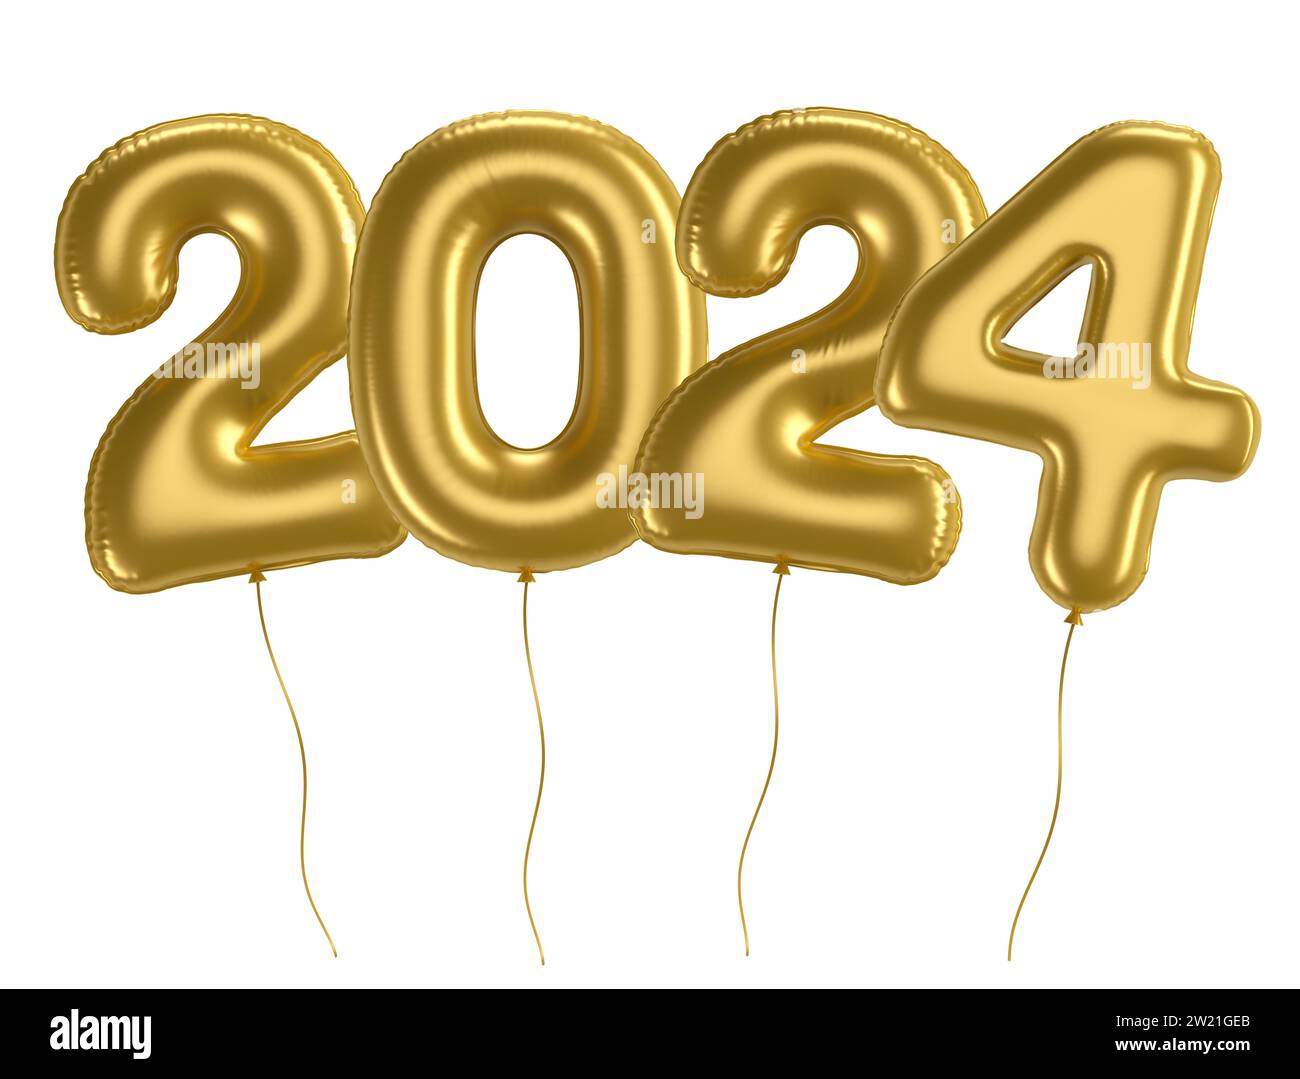 Ensemble, Décoration Du Nouvel An 2024, Ballon Numéro 2024 De 16 Pouces,  Bannière De Bonne Année, 17 Ballons En Métal Argenté De 10 Pouces, 17  Ballons